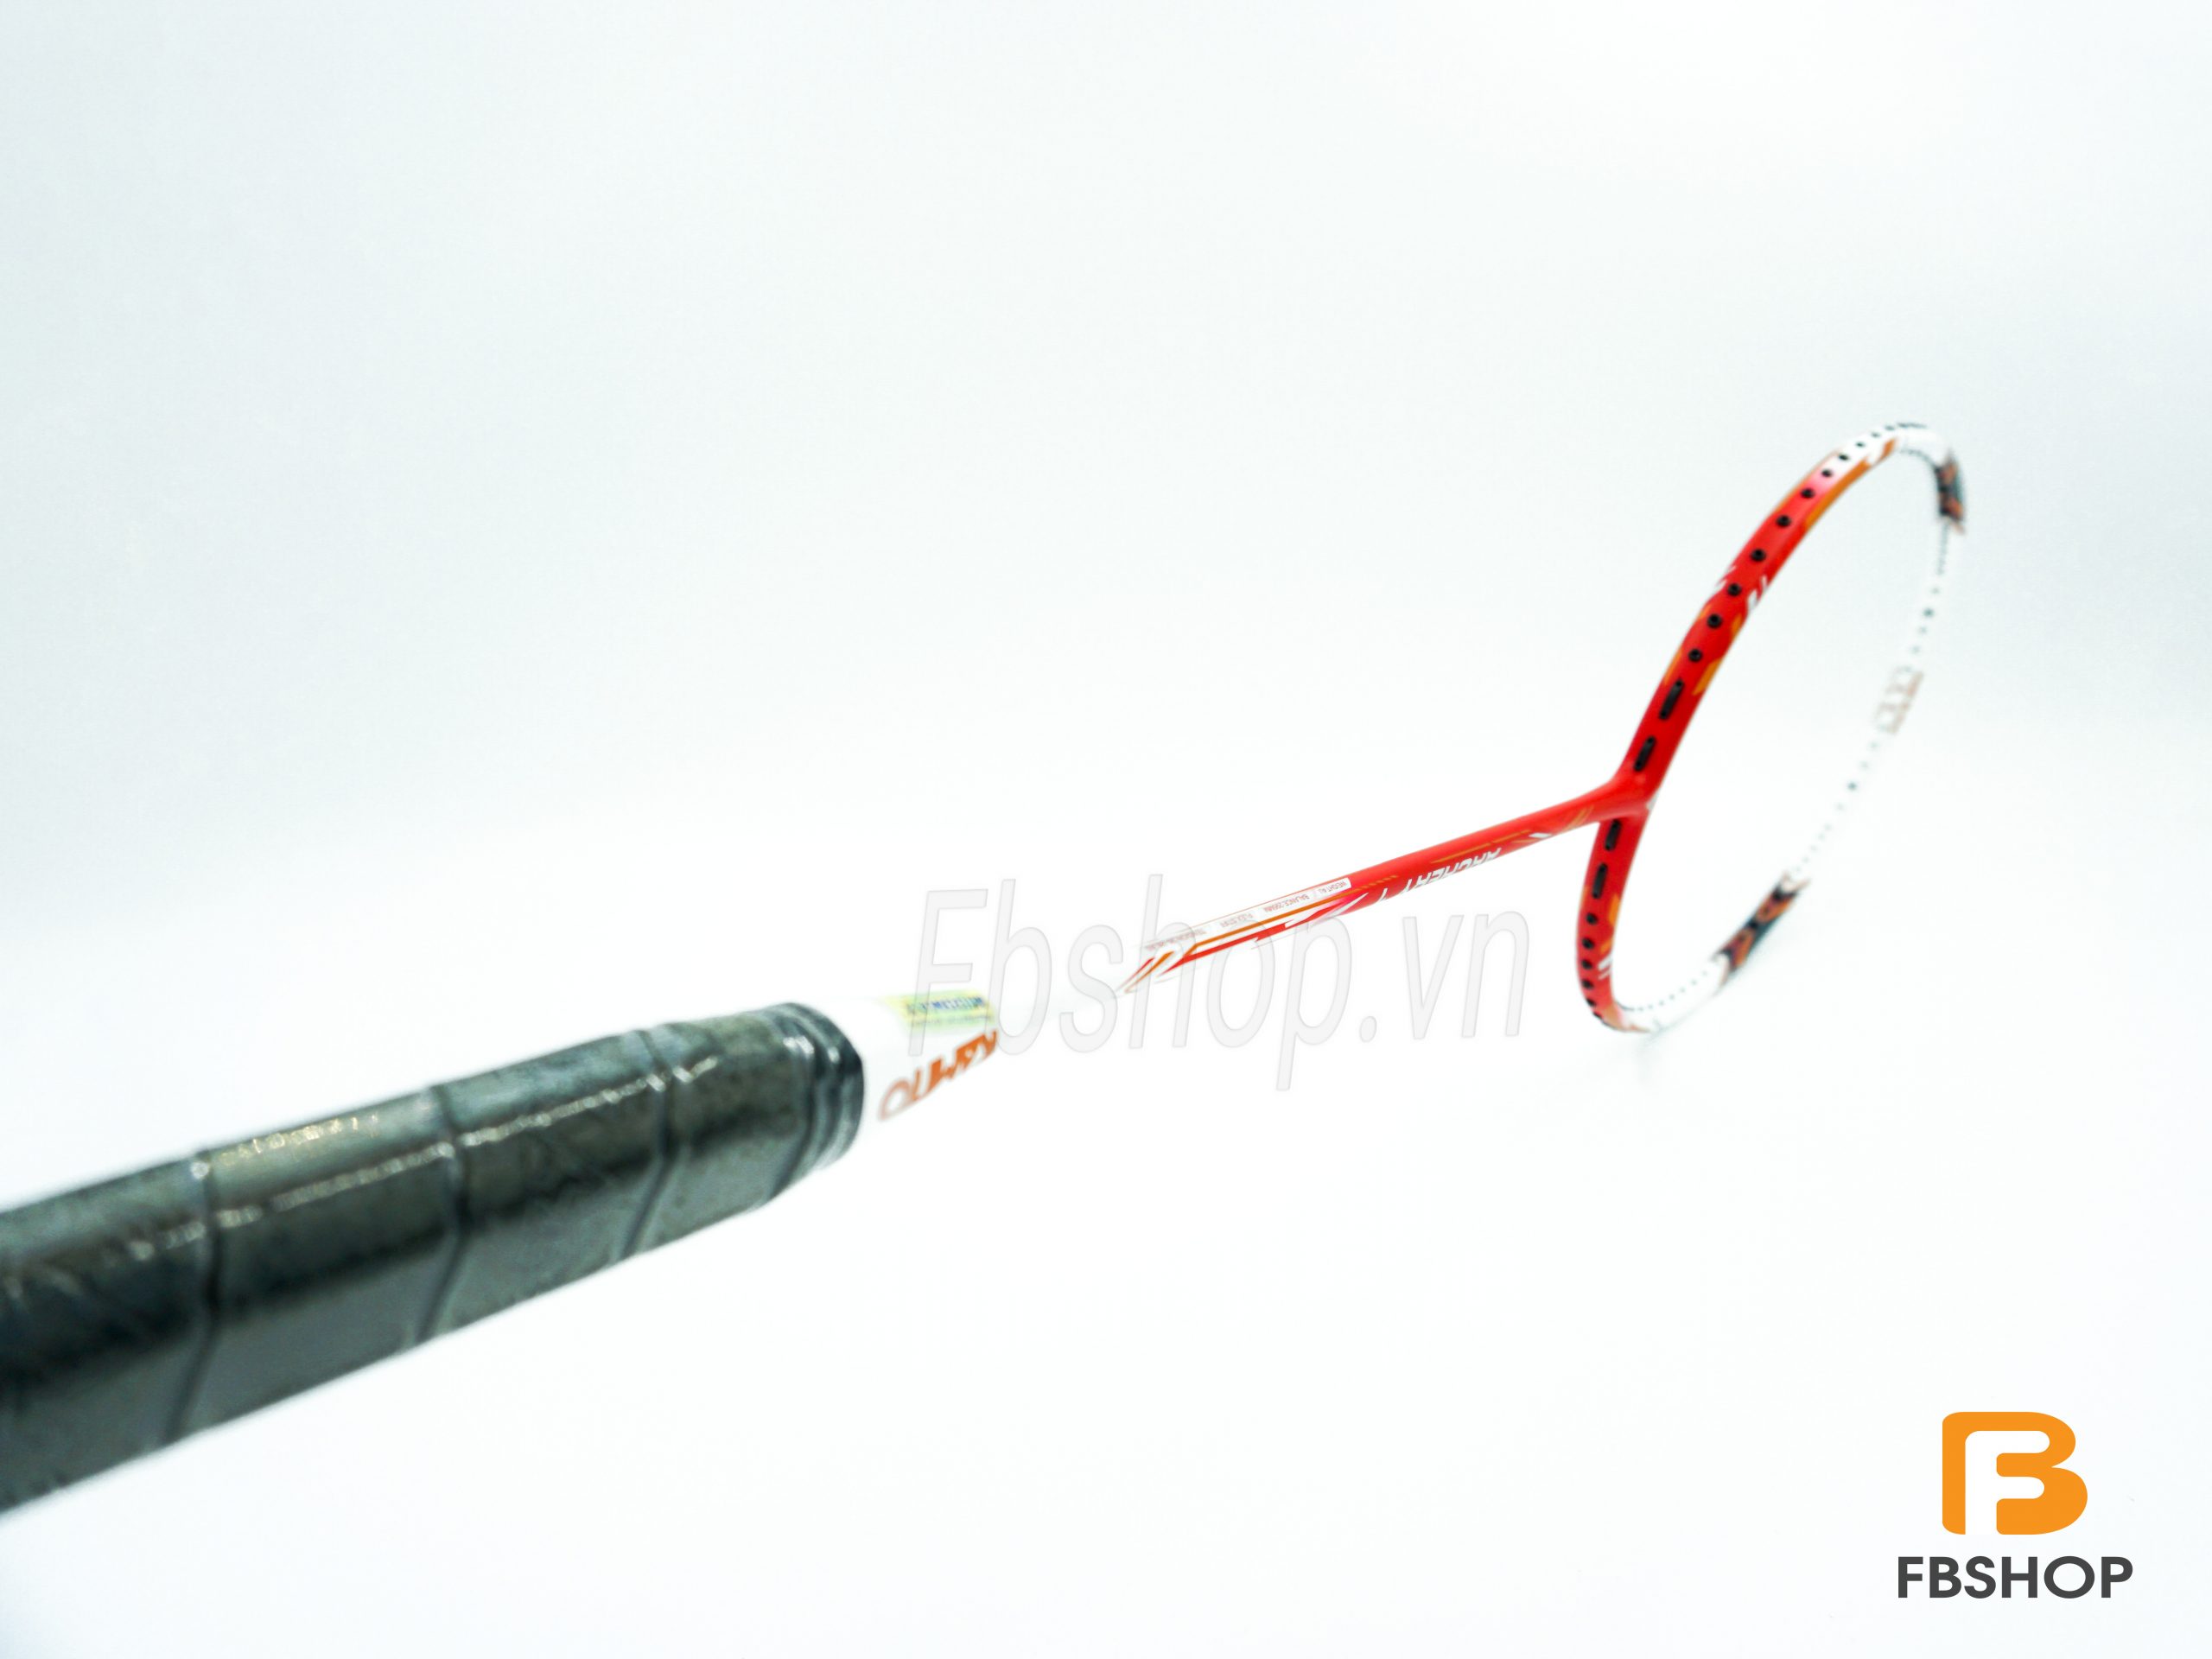 Vợt cầu lông Kamito Archery 1 đỏ